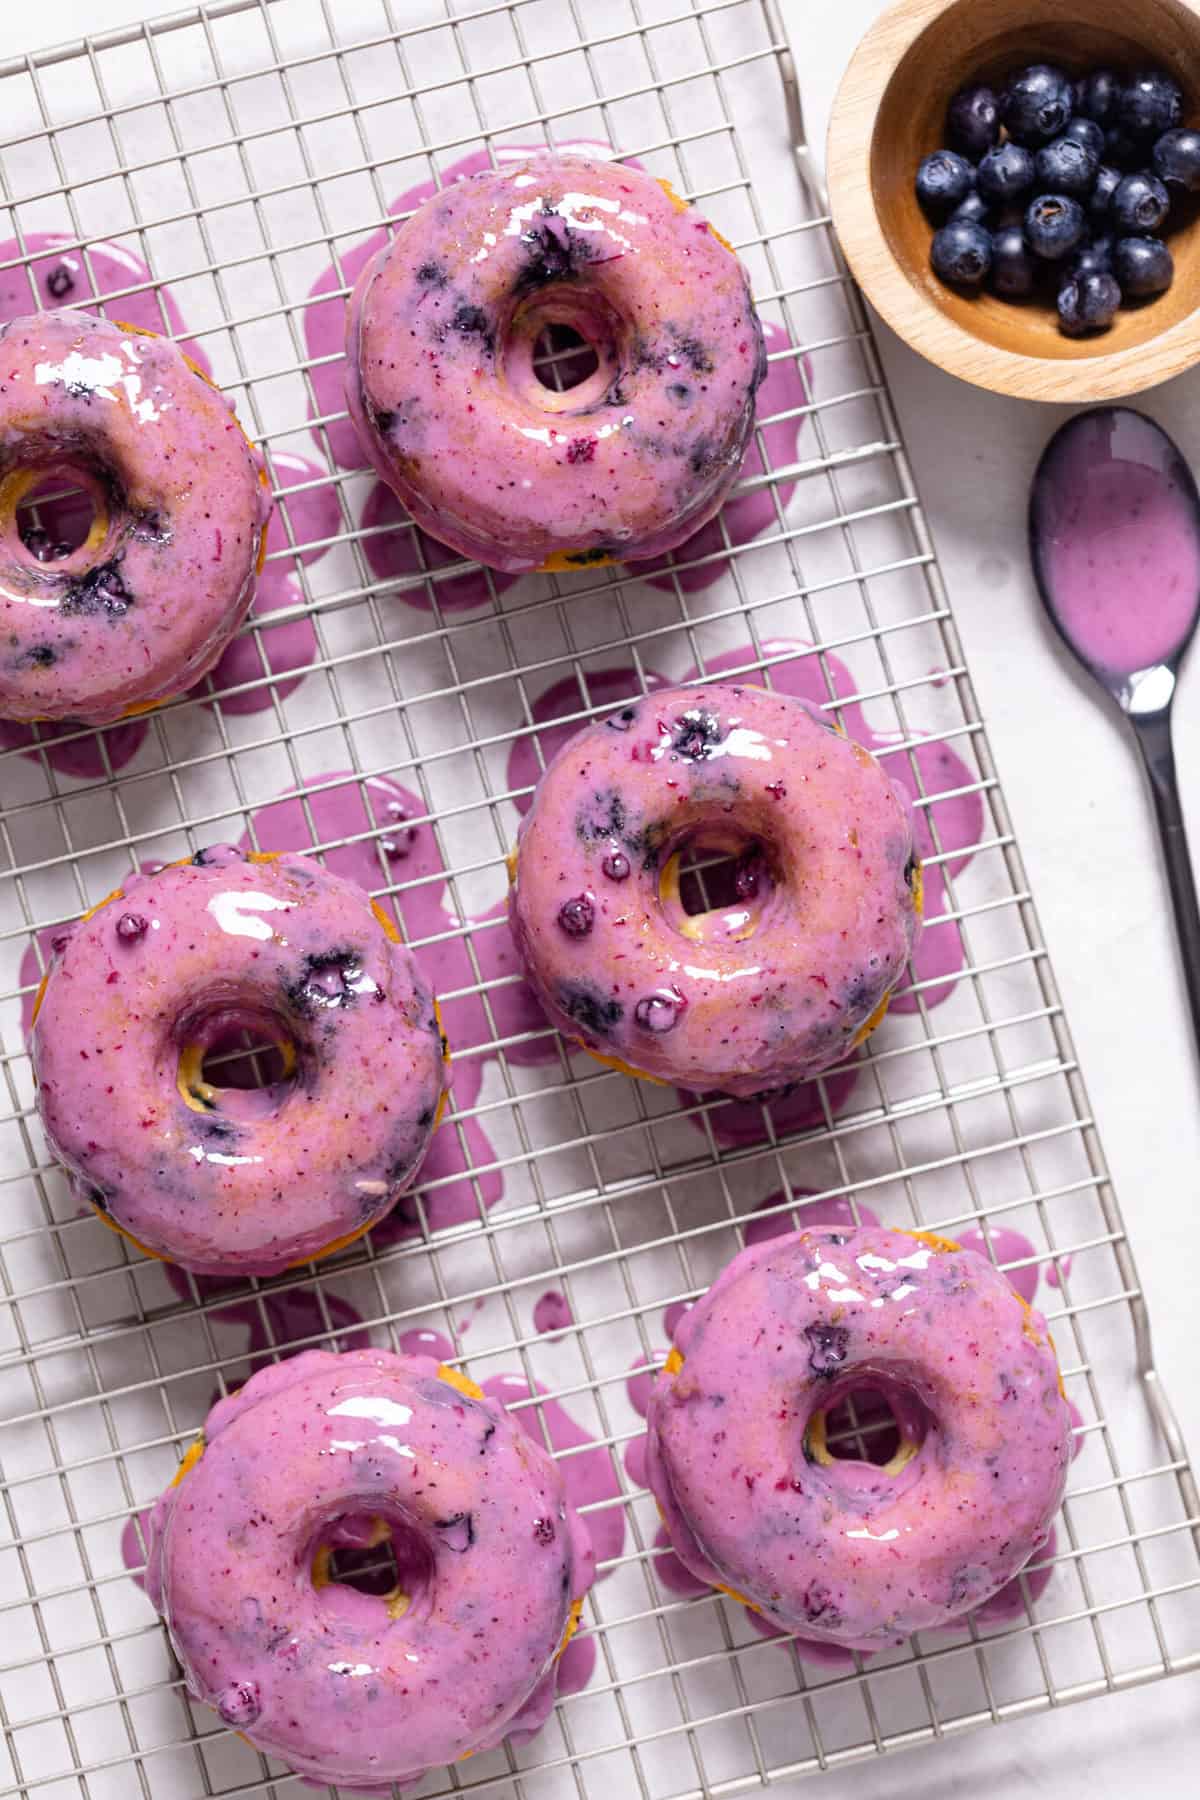 Blueberry glaze on Blueberry Vegan Donuts.